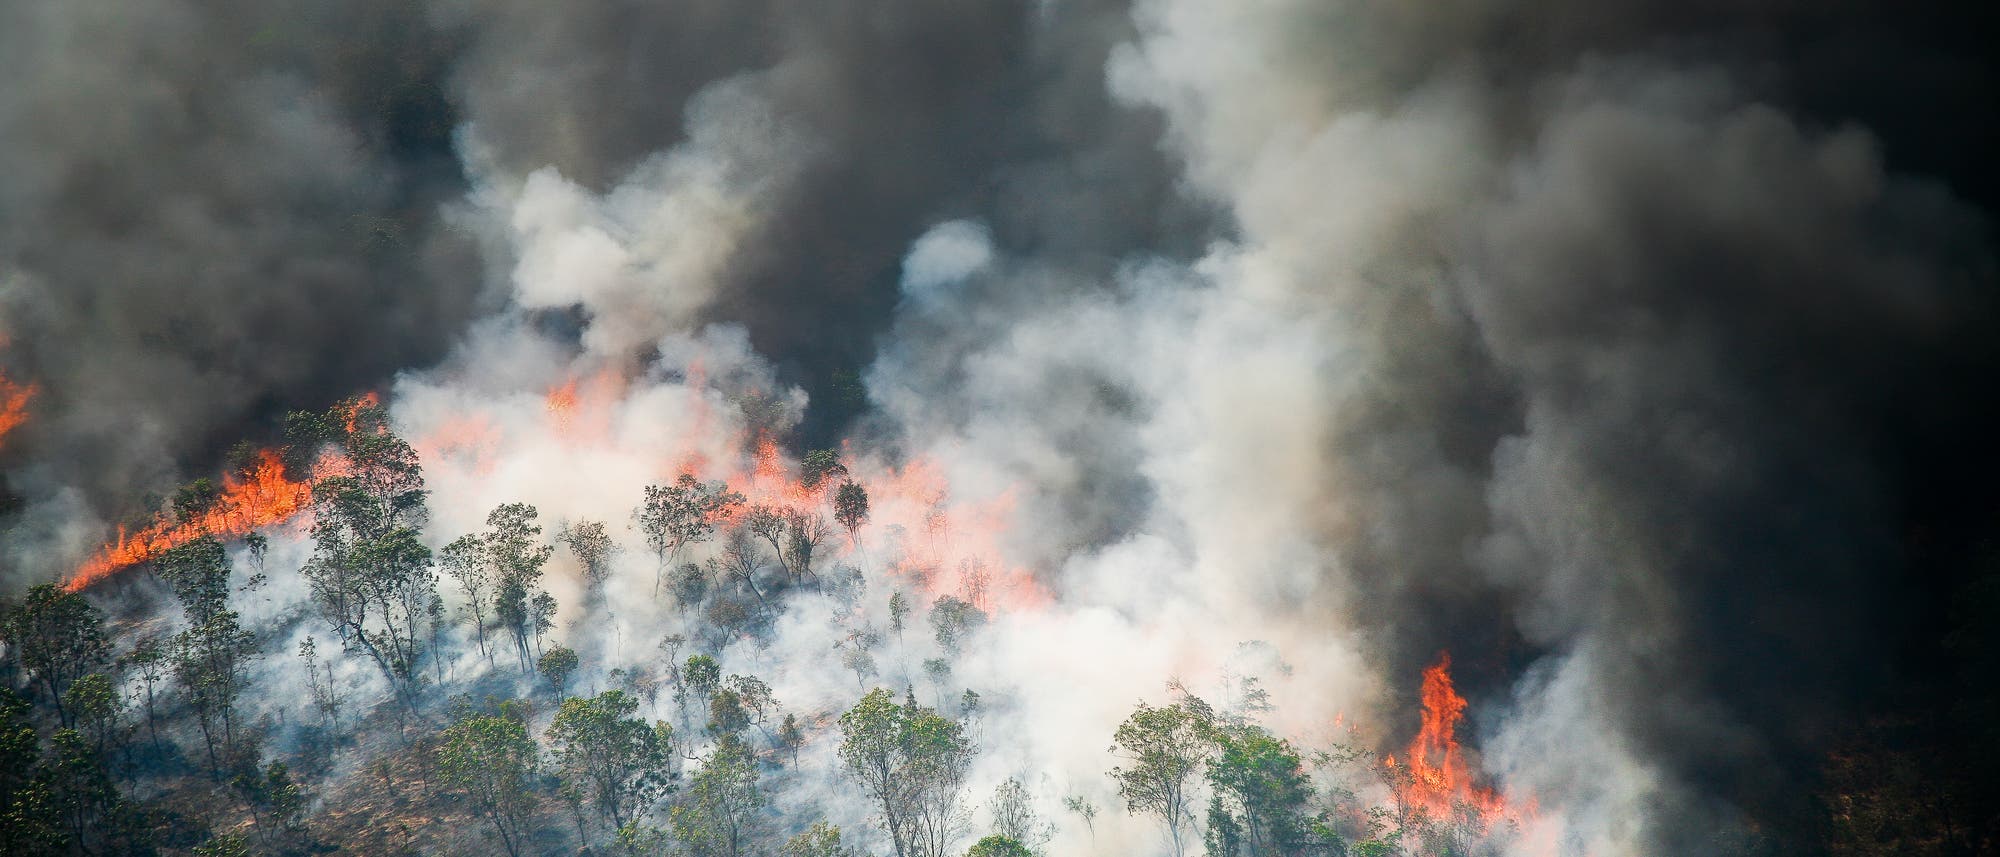 Ein Feuer frisst sich durch geschädigten Wald im Amazonasgebiet. Dichter Rauch steigt auf